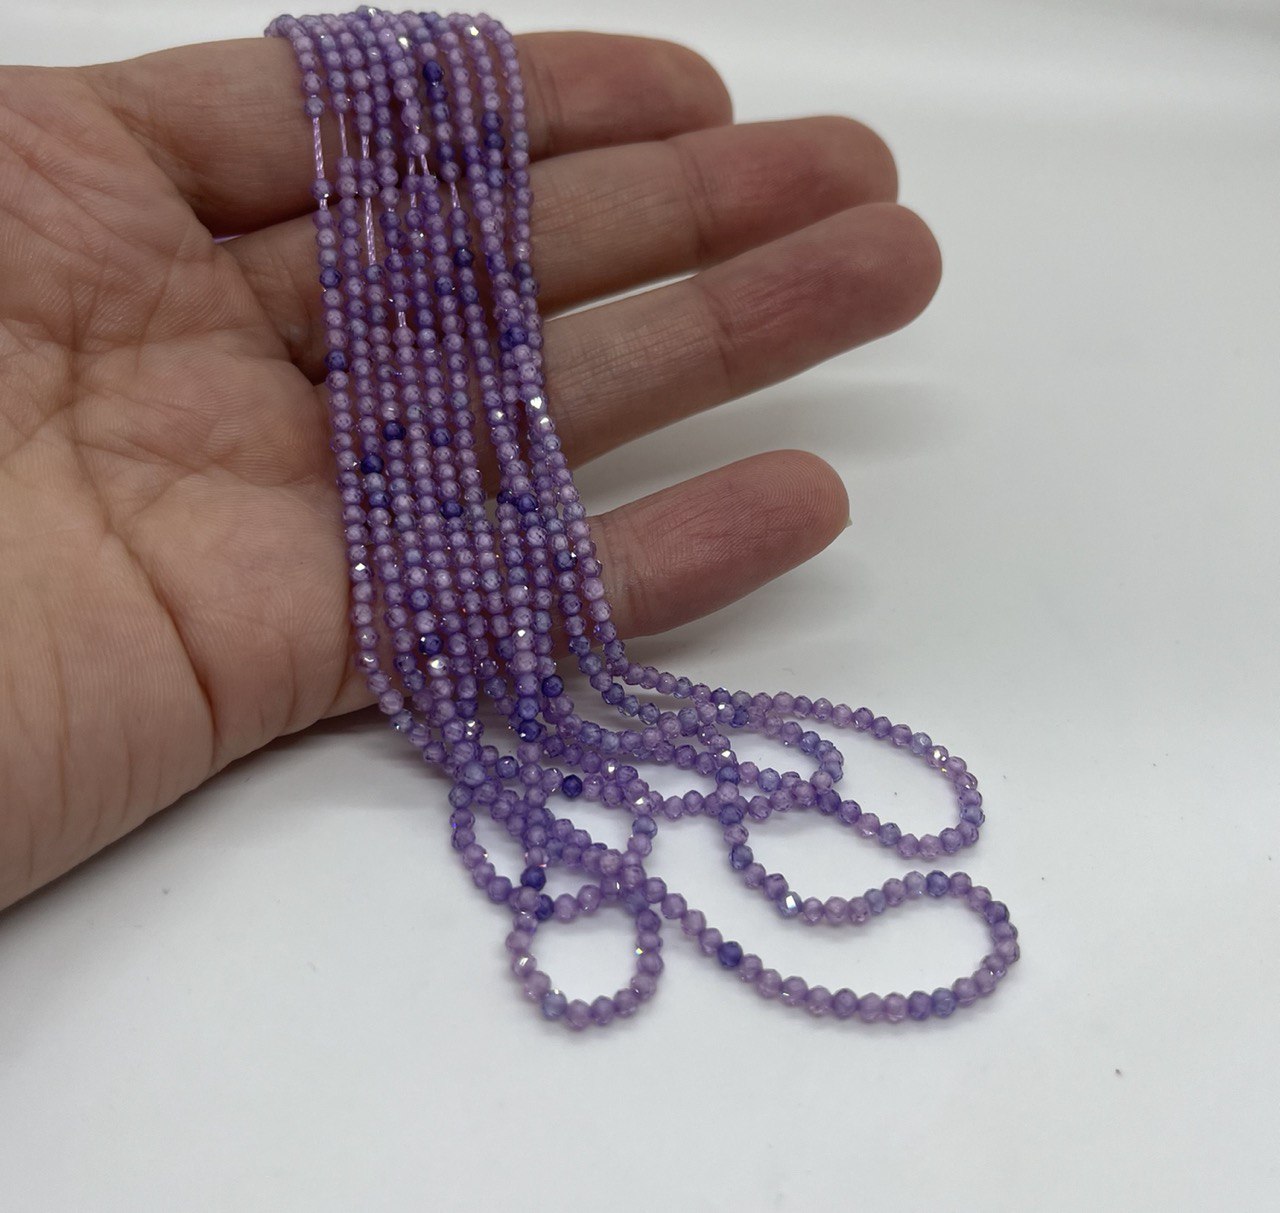 Бусины Циркон натуральный ювелирной огранки размер 2мм цвет фиолетовый